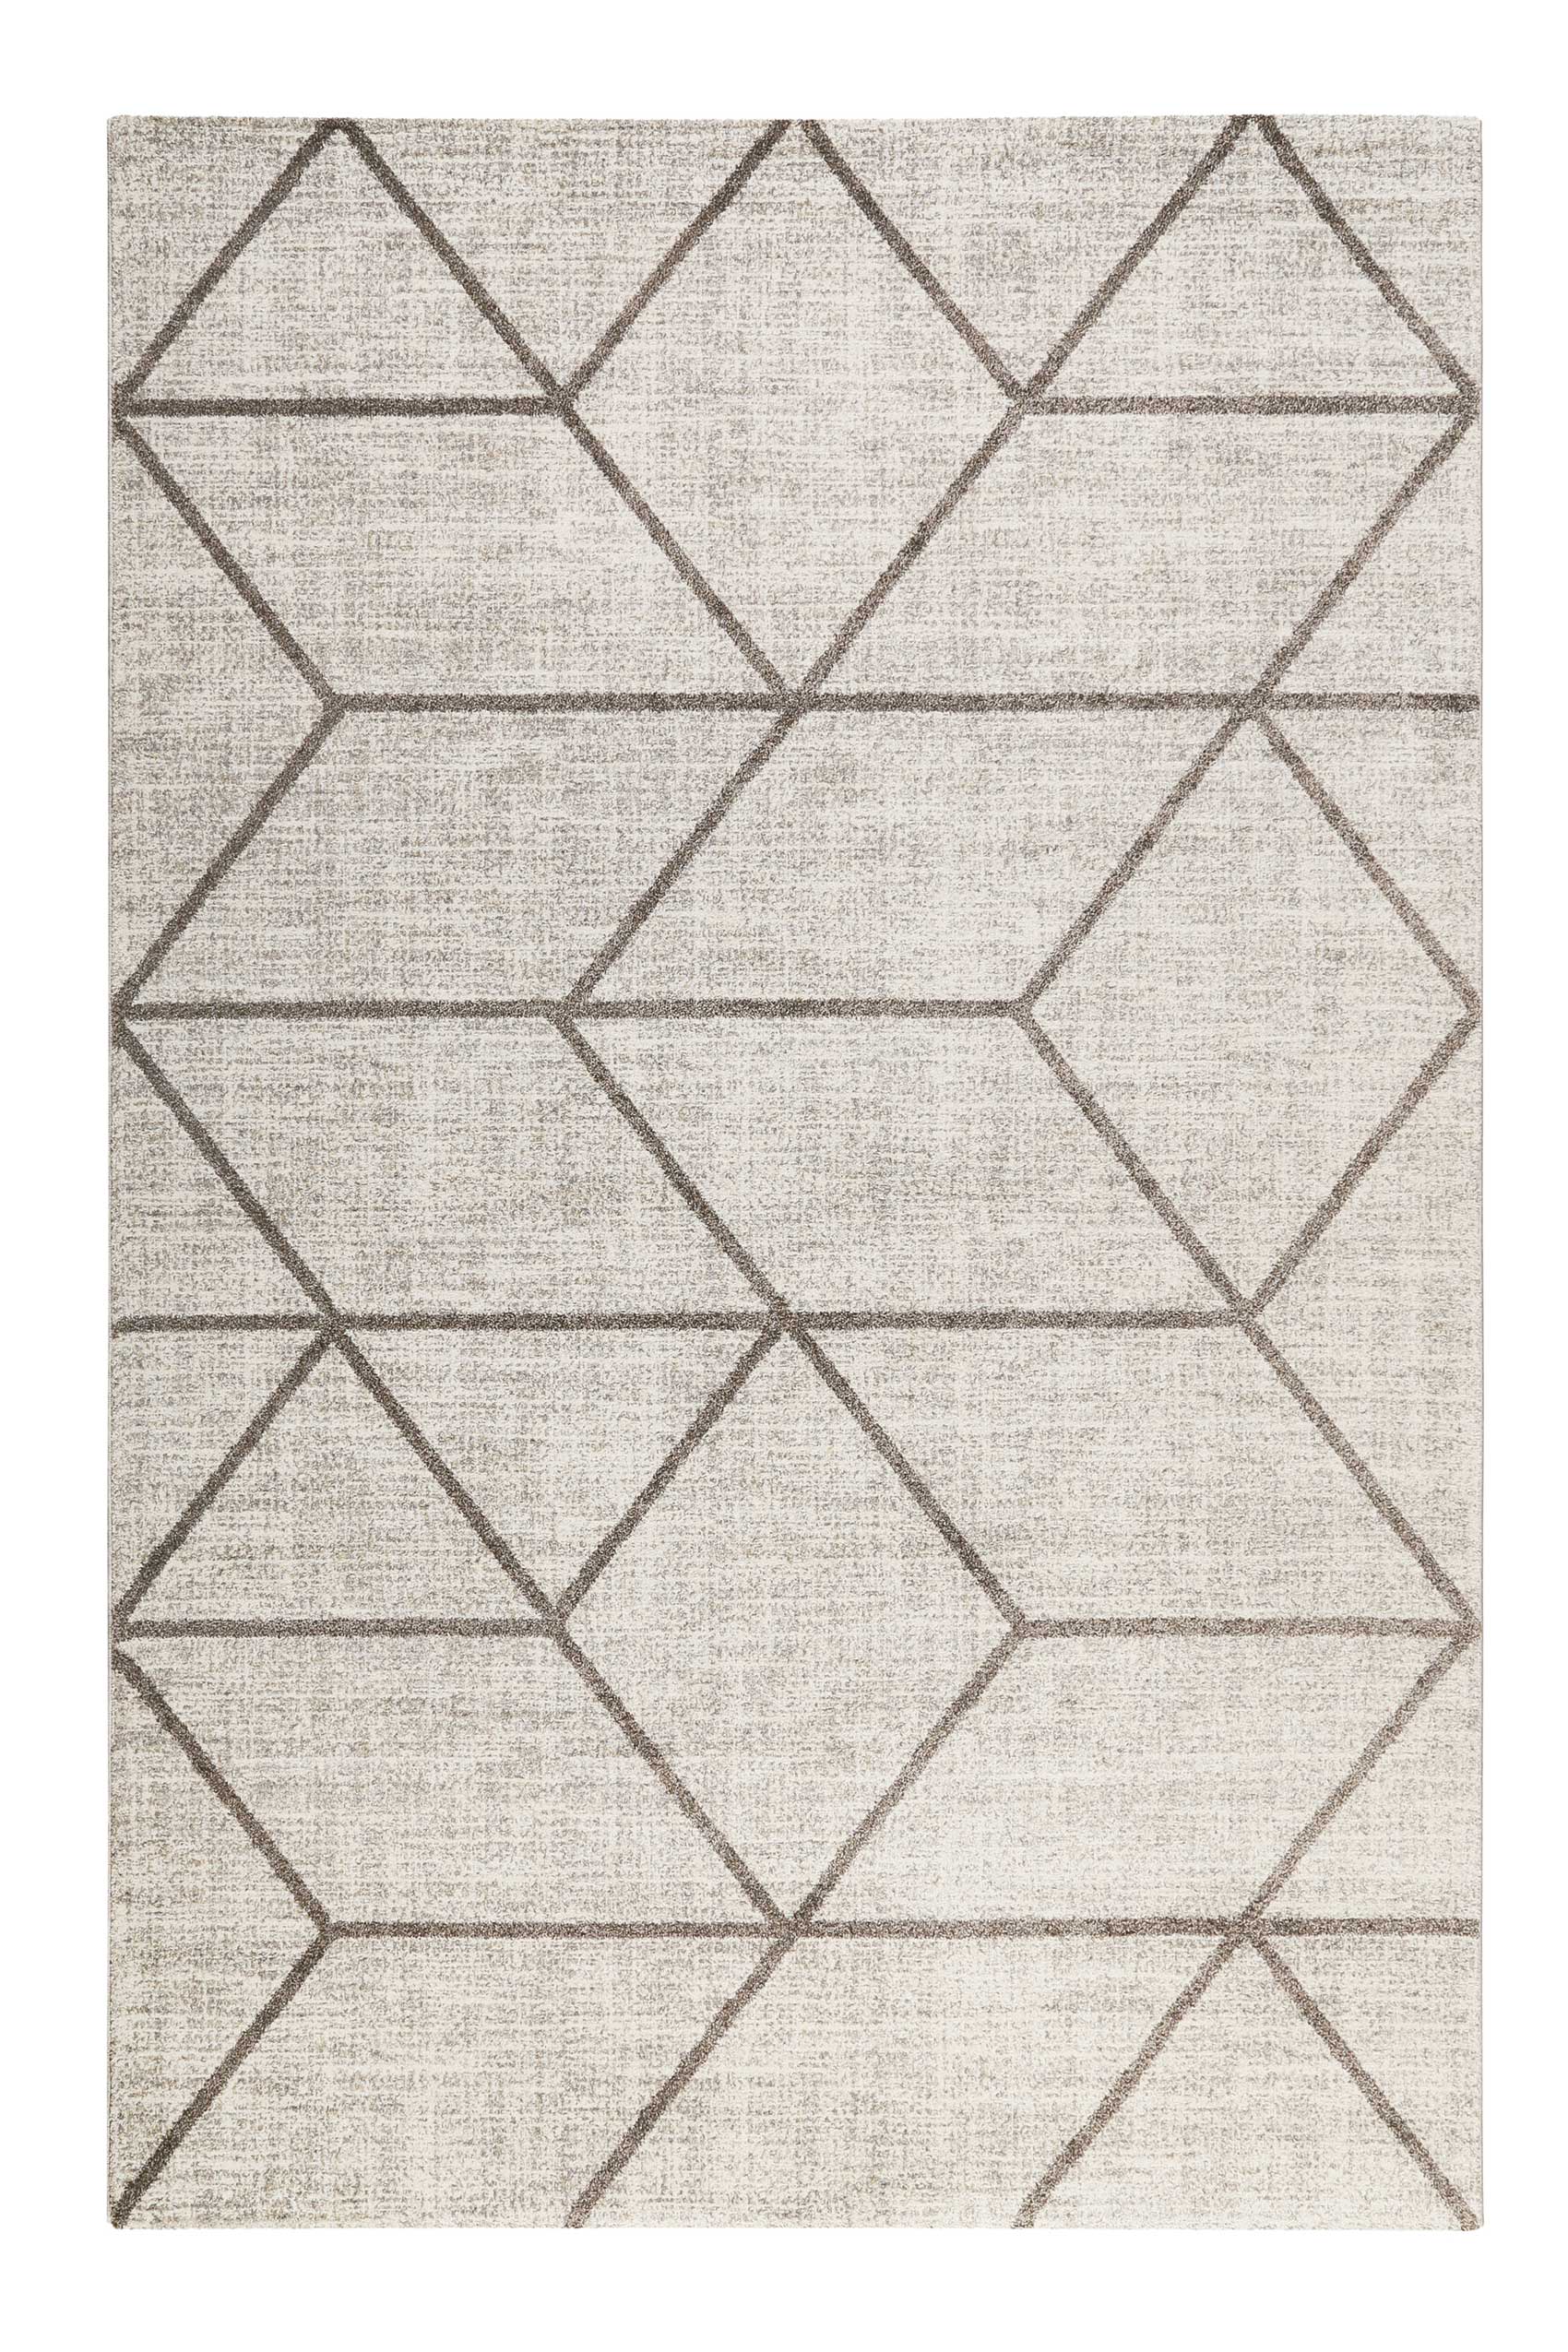 Tapis graphique motif brun gris beige chiné 290x200